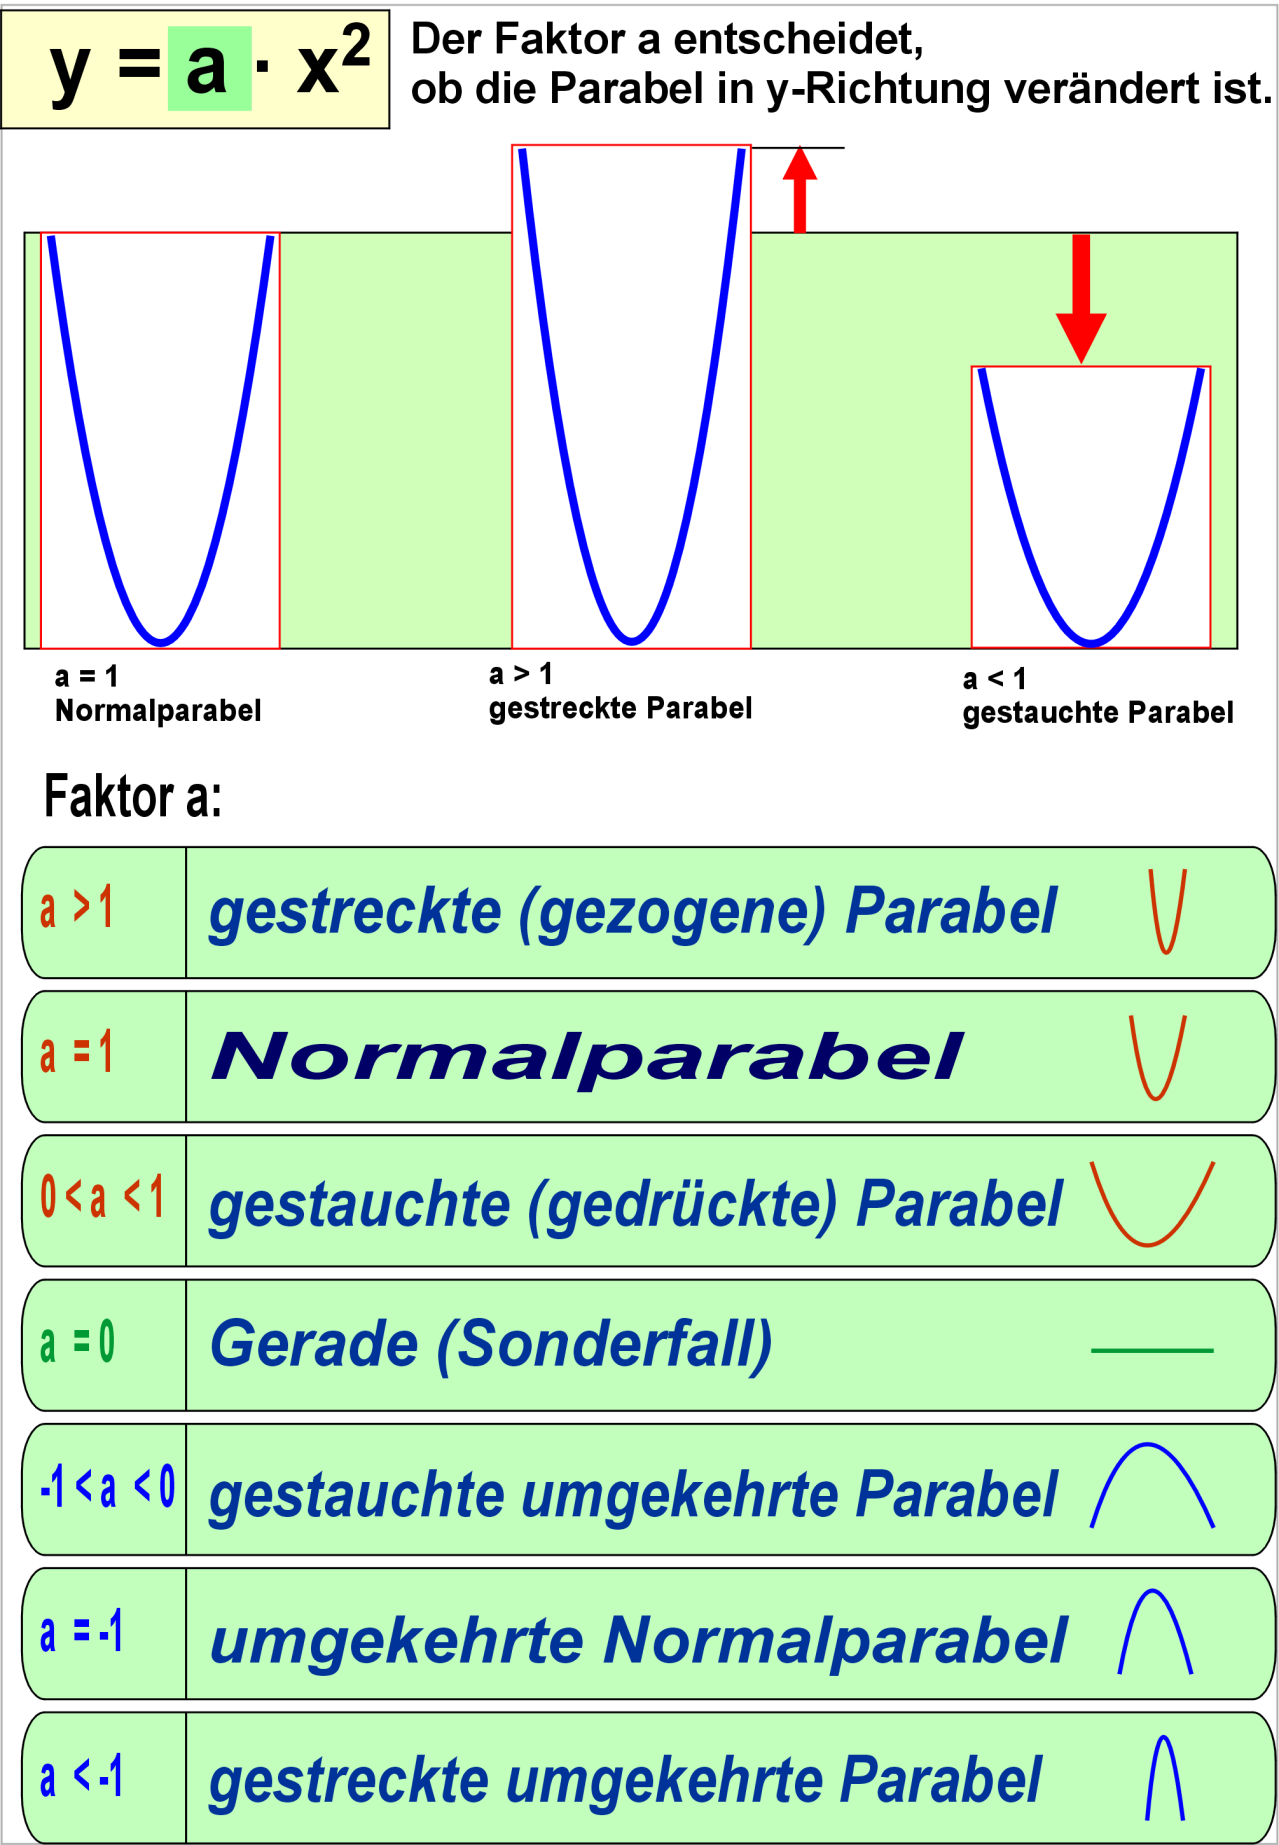 Überlege Dir nun, wie der Faktor a die Form der Parabel verändert.